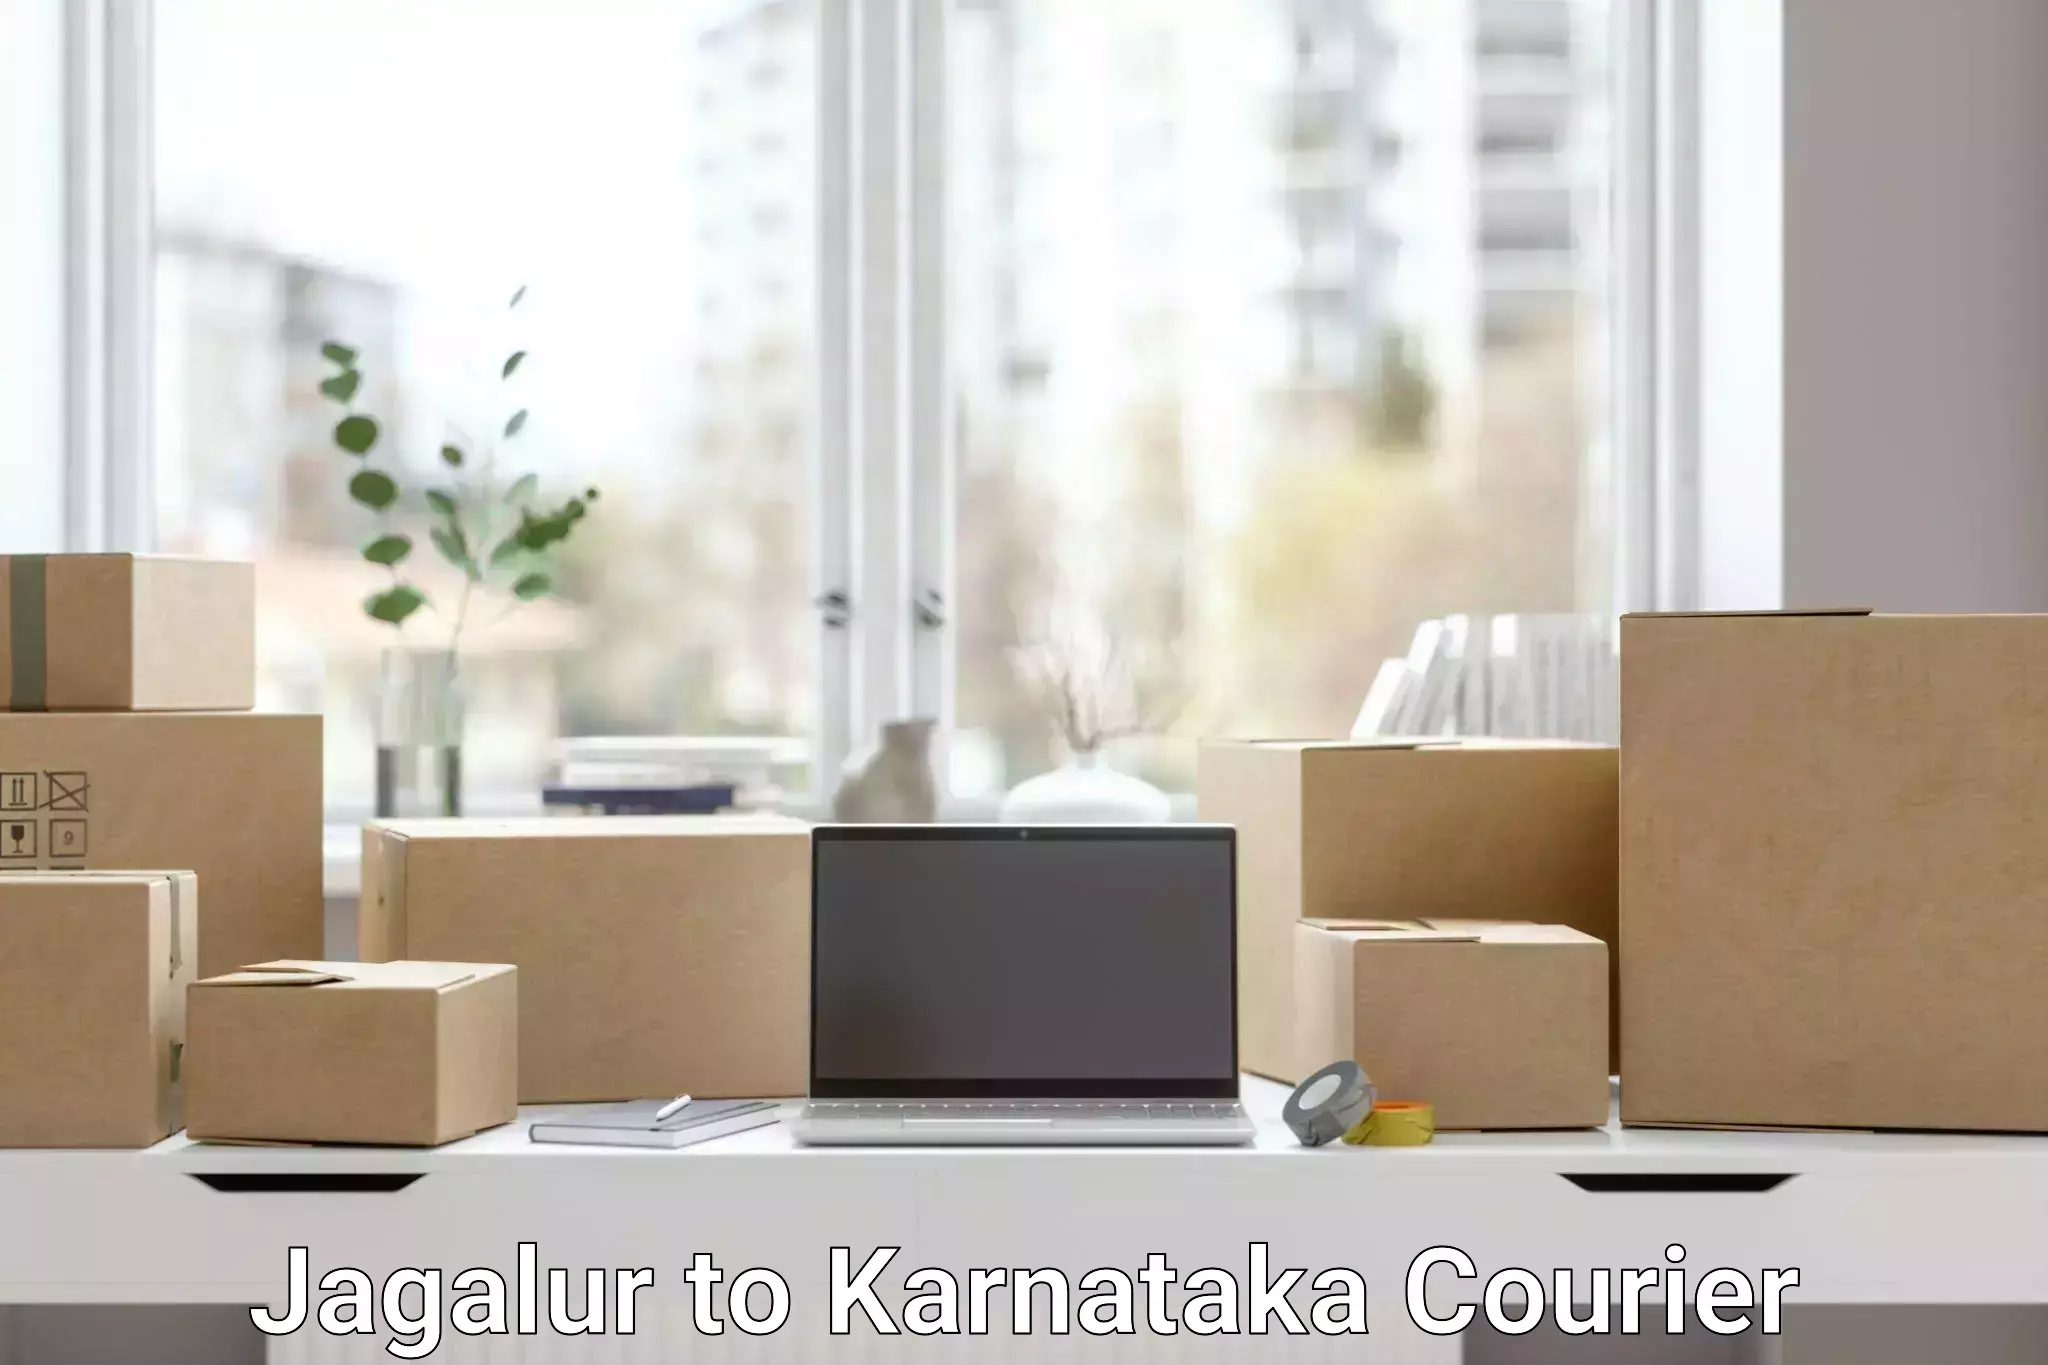 Efficient cargo services Jagalur to Karnataka